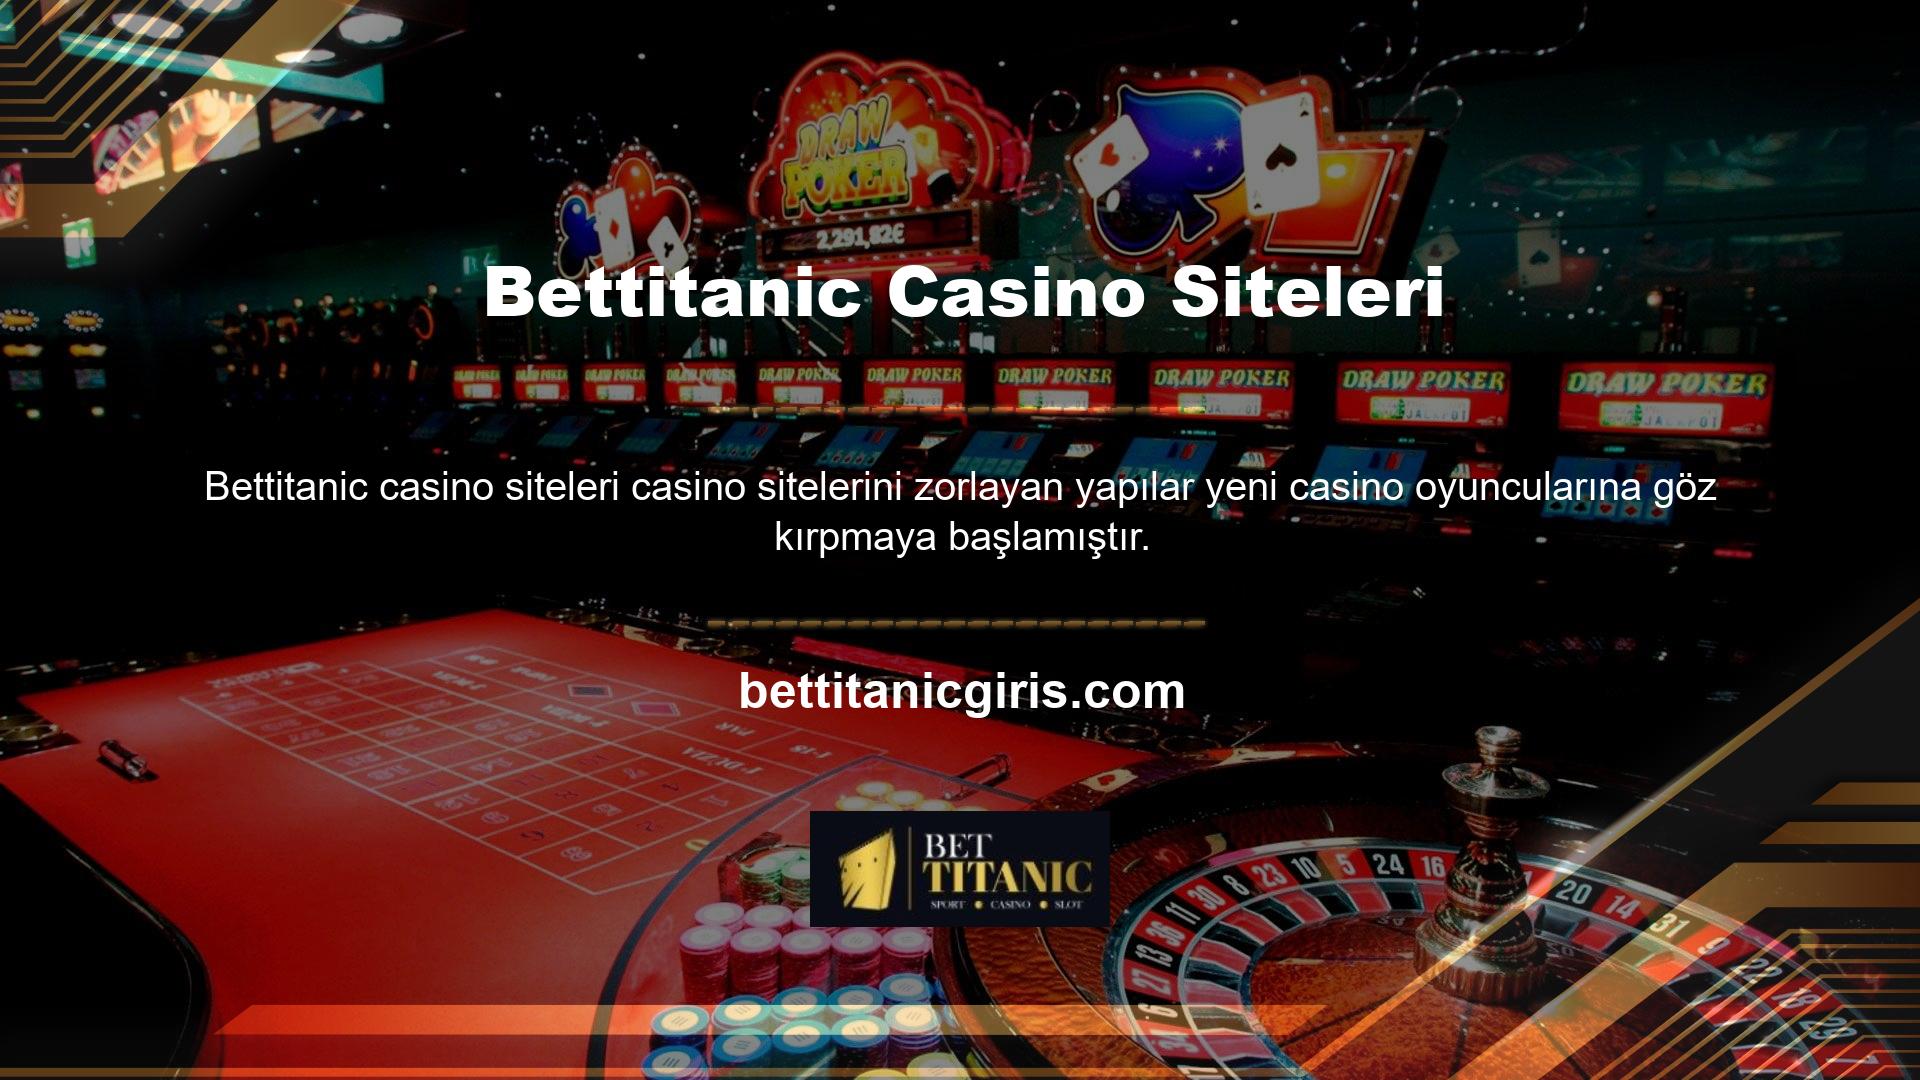 Battle for Games ağı gibi yalnızca casino tarafından bilinen altyapı kullanıldı